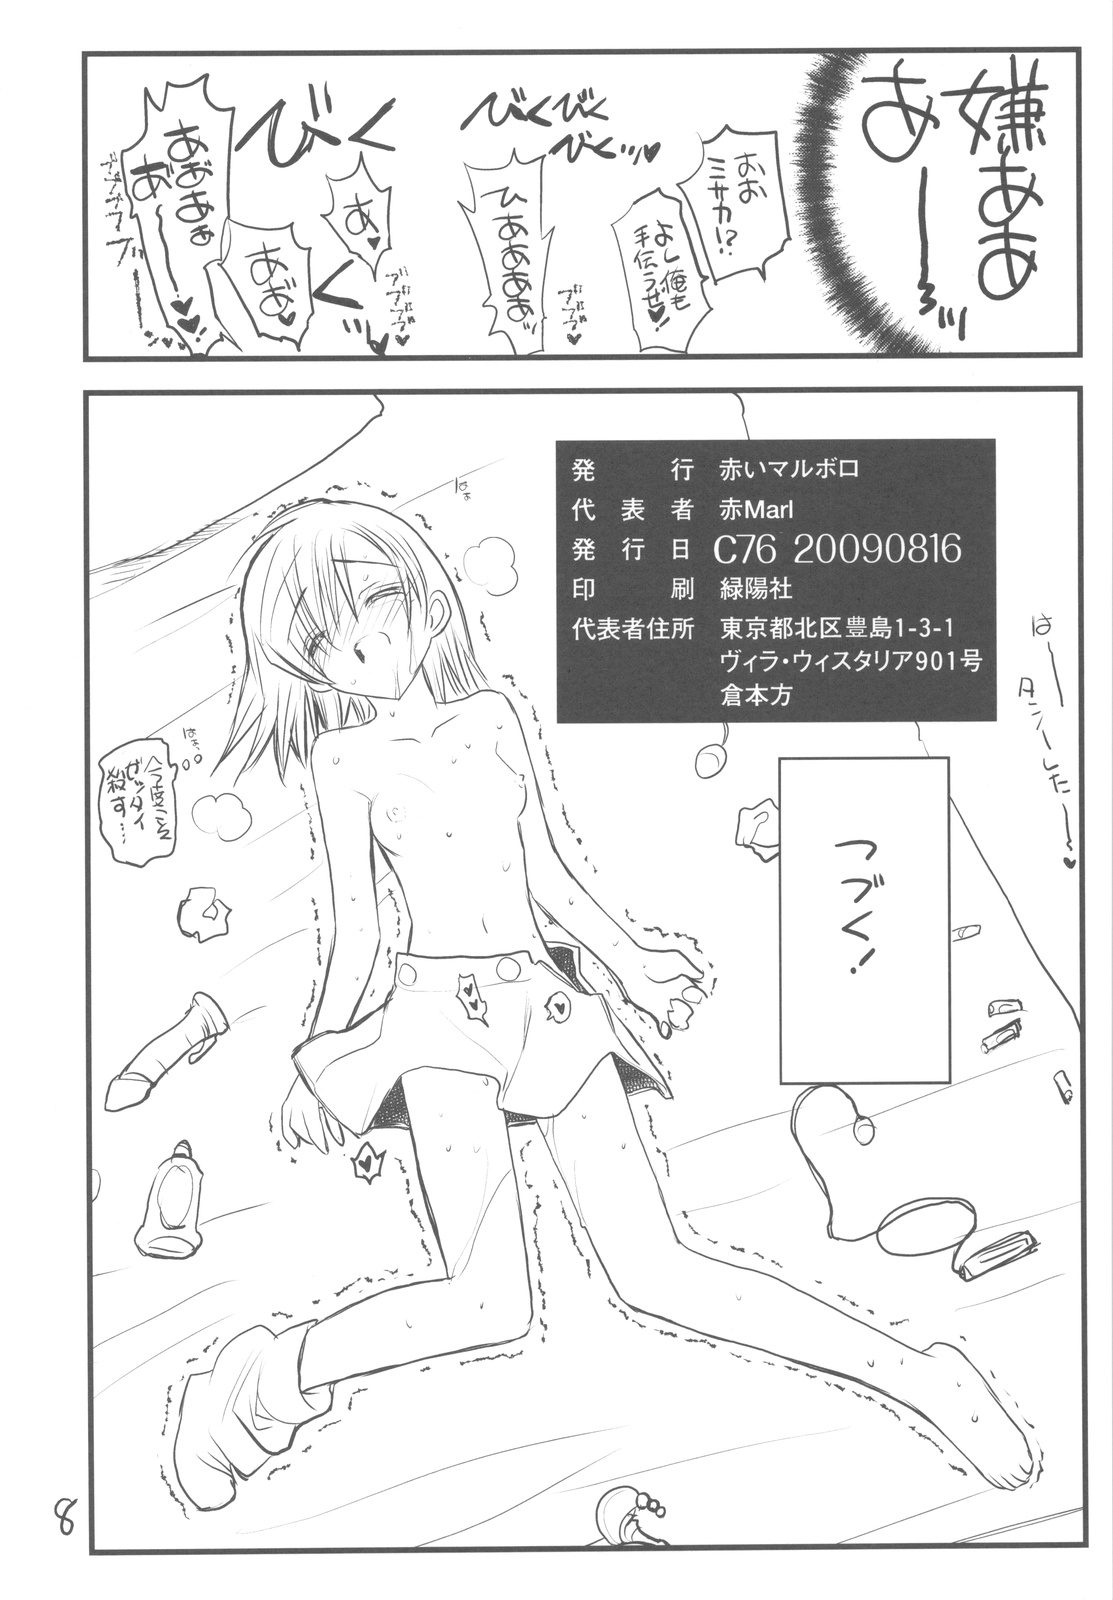 (C76) [Akai Marlboro (Aka Marl)] Misaka Mikoto Route ni Tsuki Index ha Dete Kimasen 3 Tada Kubari Hon (Toaru Kagaku no Railgun) page 8 full